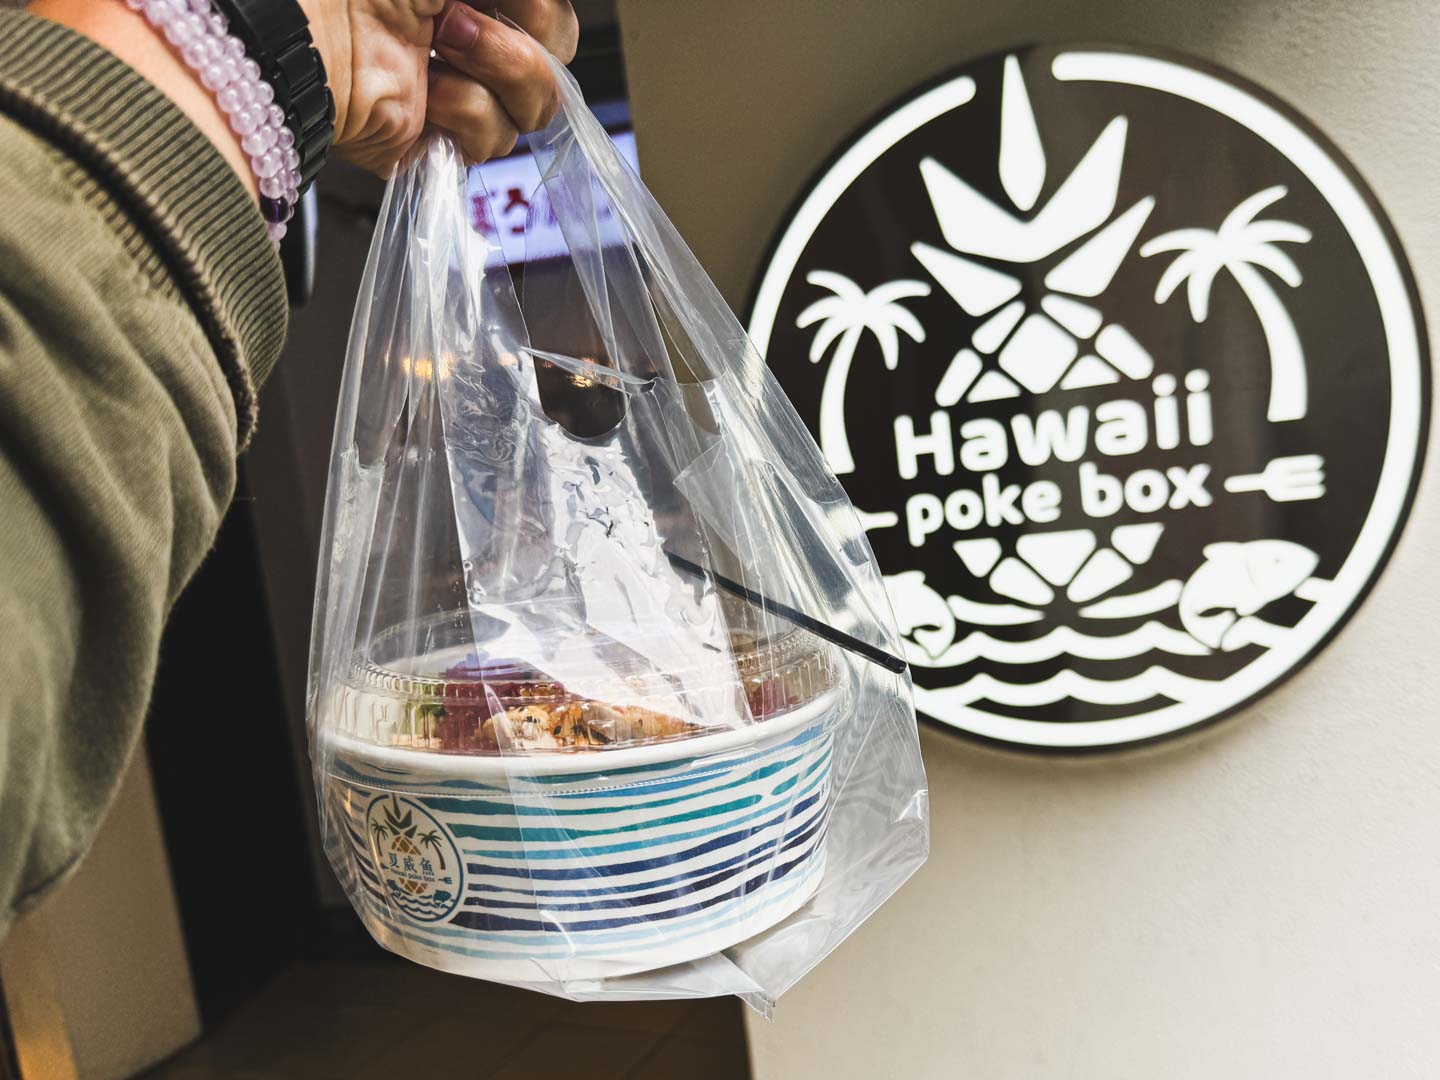 夏威魚 HawaiiPokeBox, 夏威魚, 夏威魚菜單, 夏威魚推薦, 台北車站美食